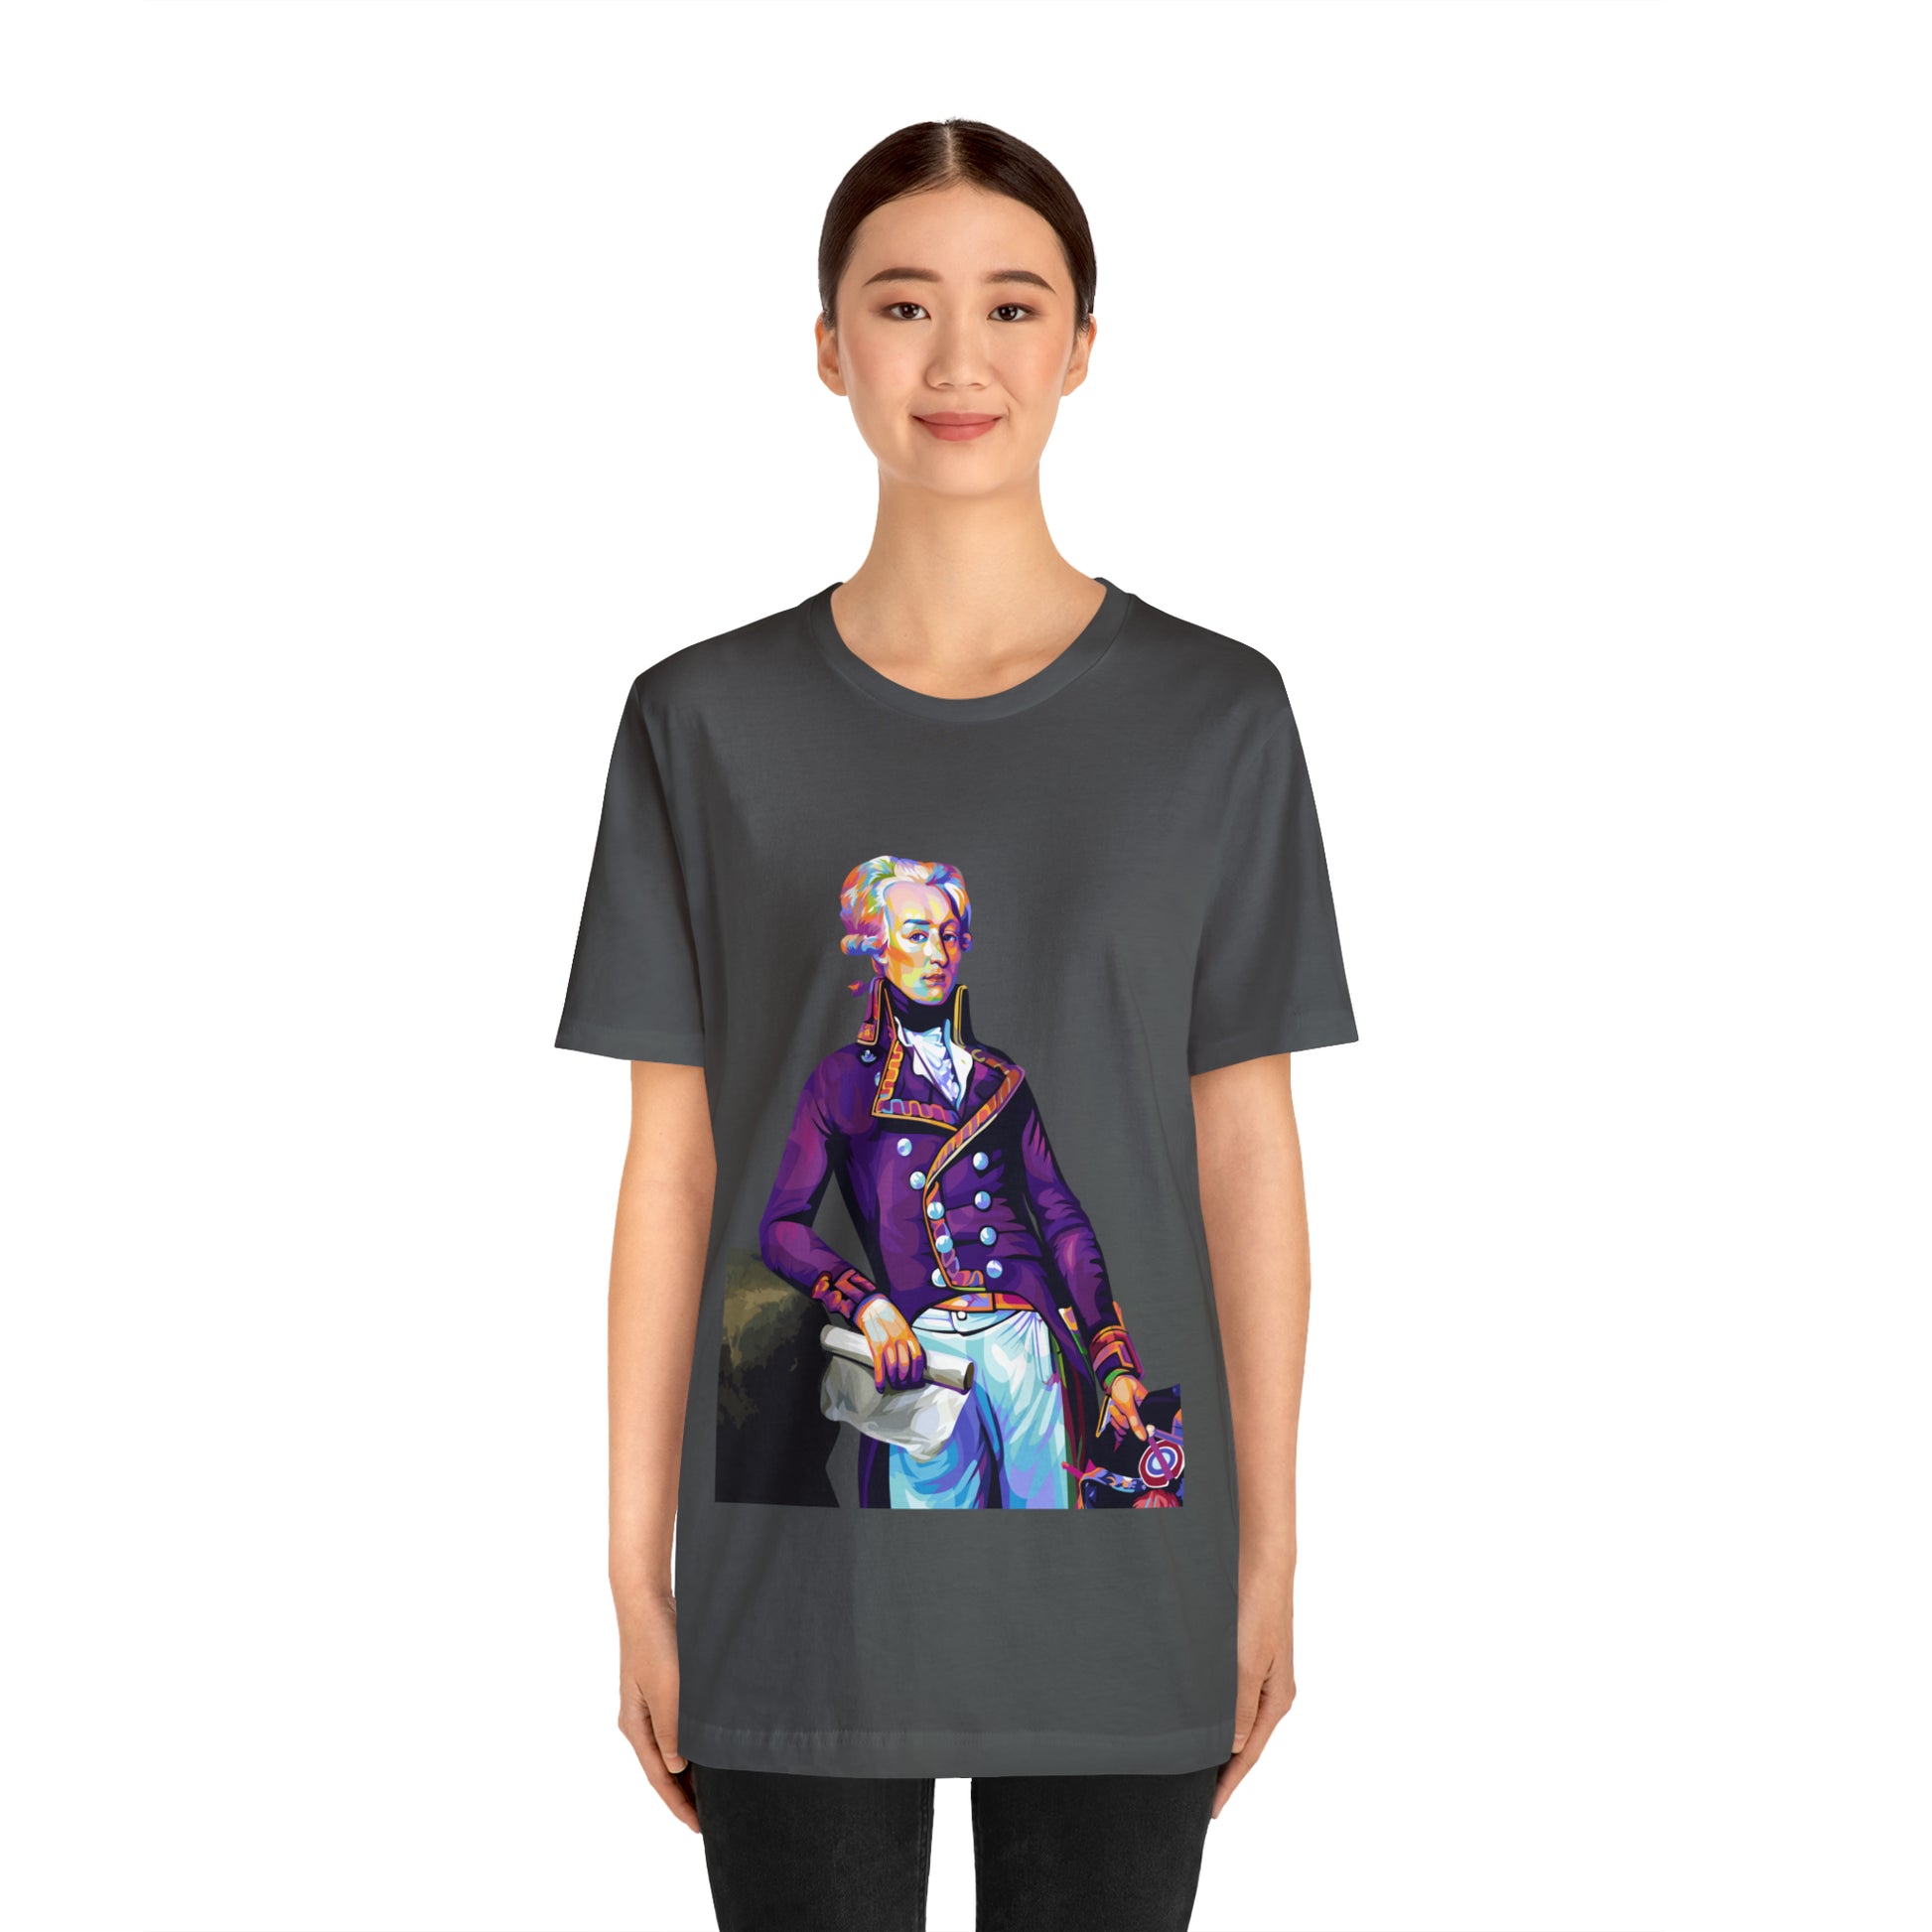 Marquis de Lafayette Pop Art portrait on a tshirt